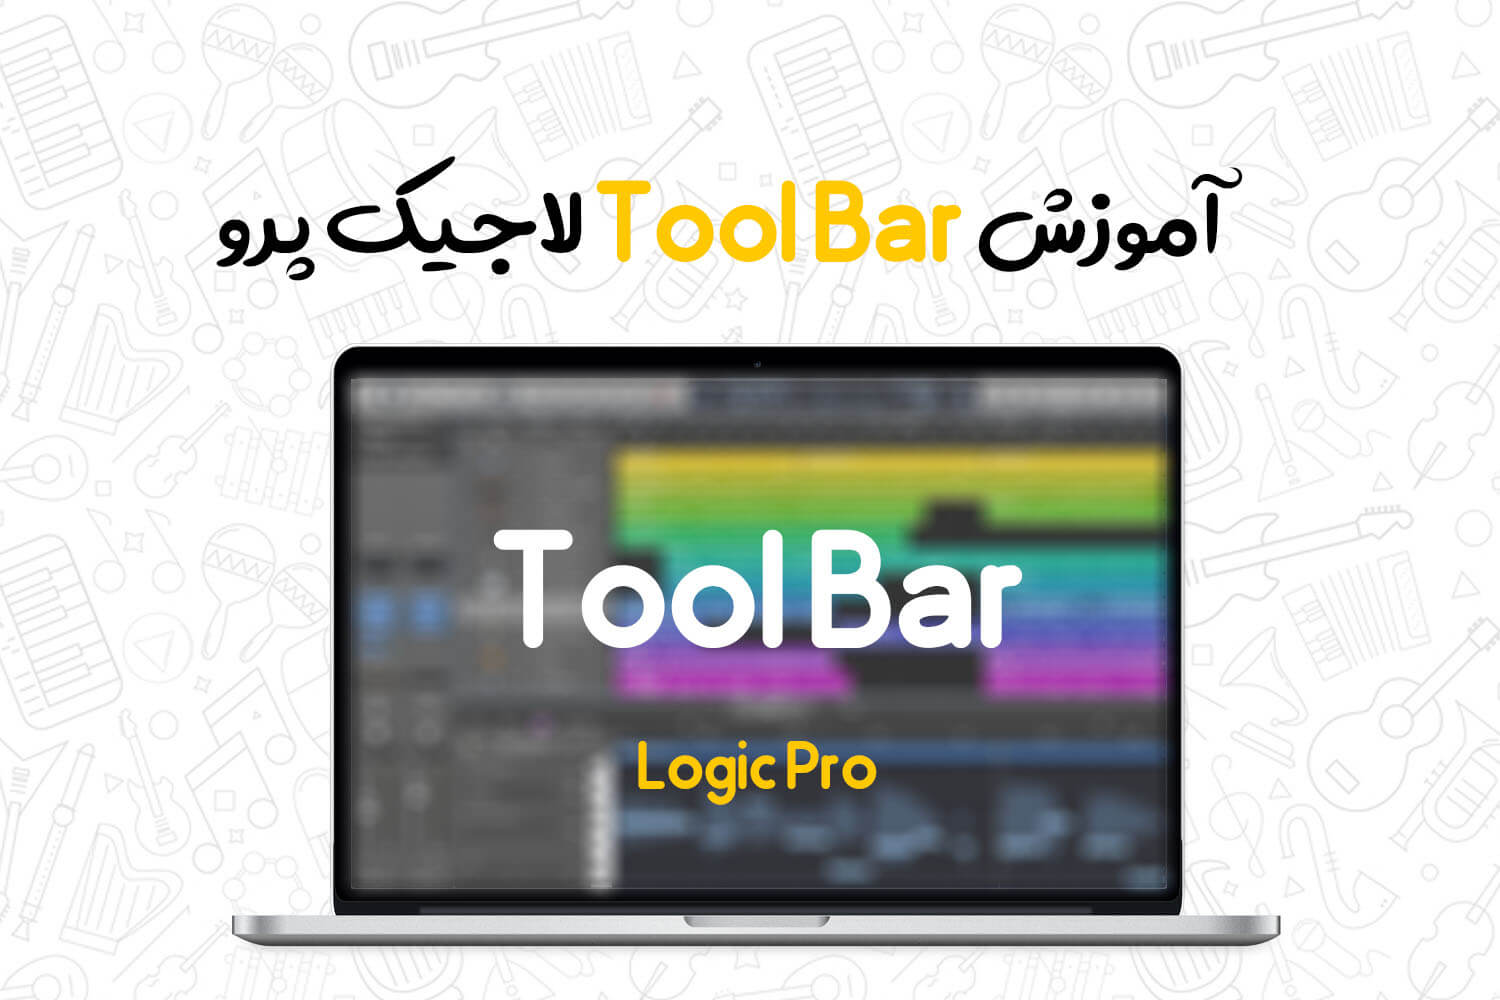 آموزش Toolbar لاجیک پرو یکی از بخش های جذاب برنامه لاجیک پرو قسمت Toolbar می باشد که امکانات بسیار کاربردی را در اختیار شما میگذارد در این مقاله قصد داریم کاربردیترین ابزار های Toolbar لاجیک پرو به شما آموزش دهیم. قابلیت های Toolbar لاجیک پرو